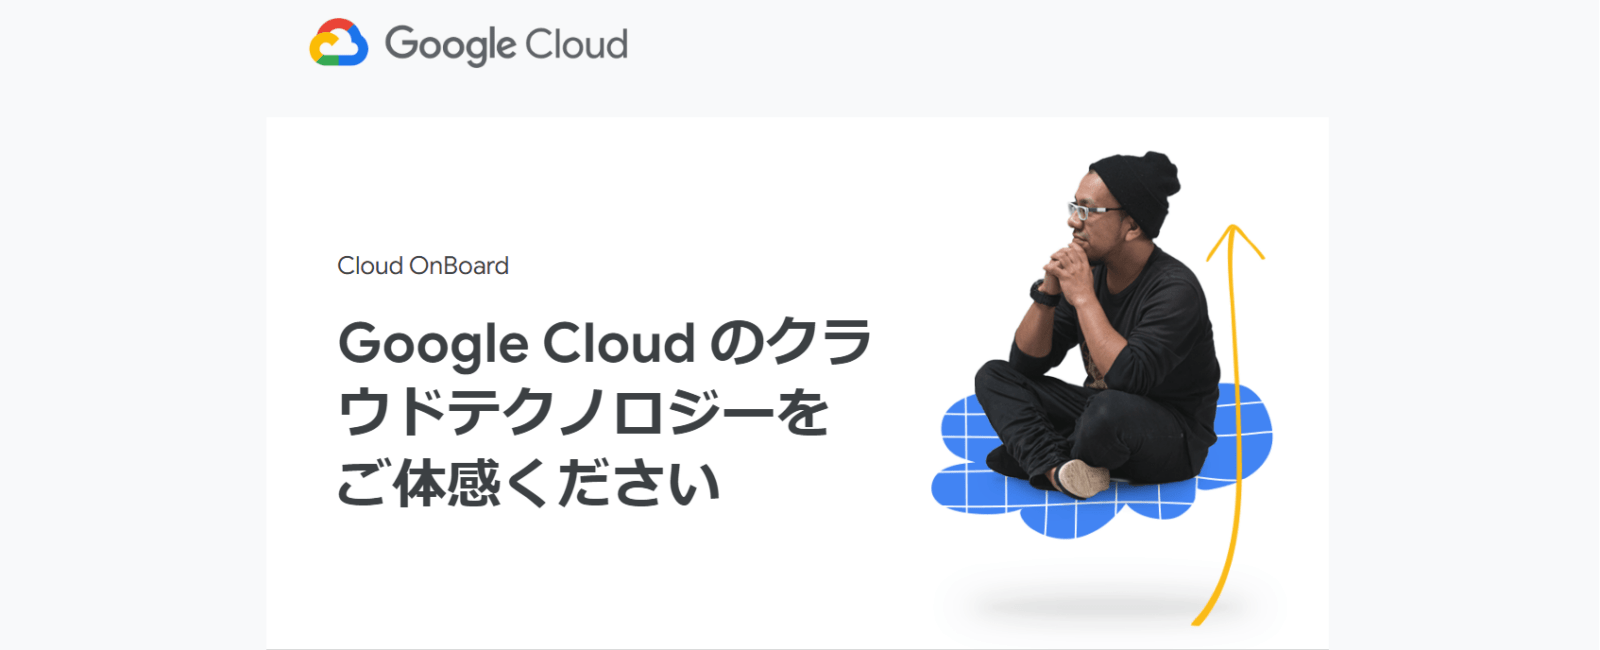 2019年10月4日配信 Google Cloud ニュースレター メイン画像